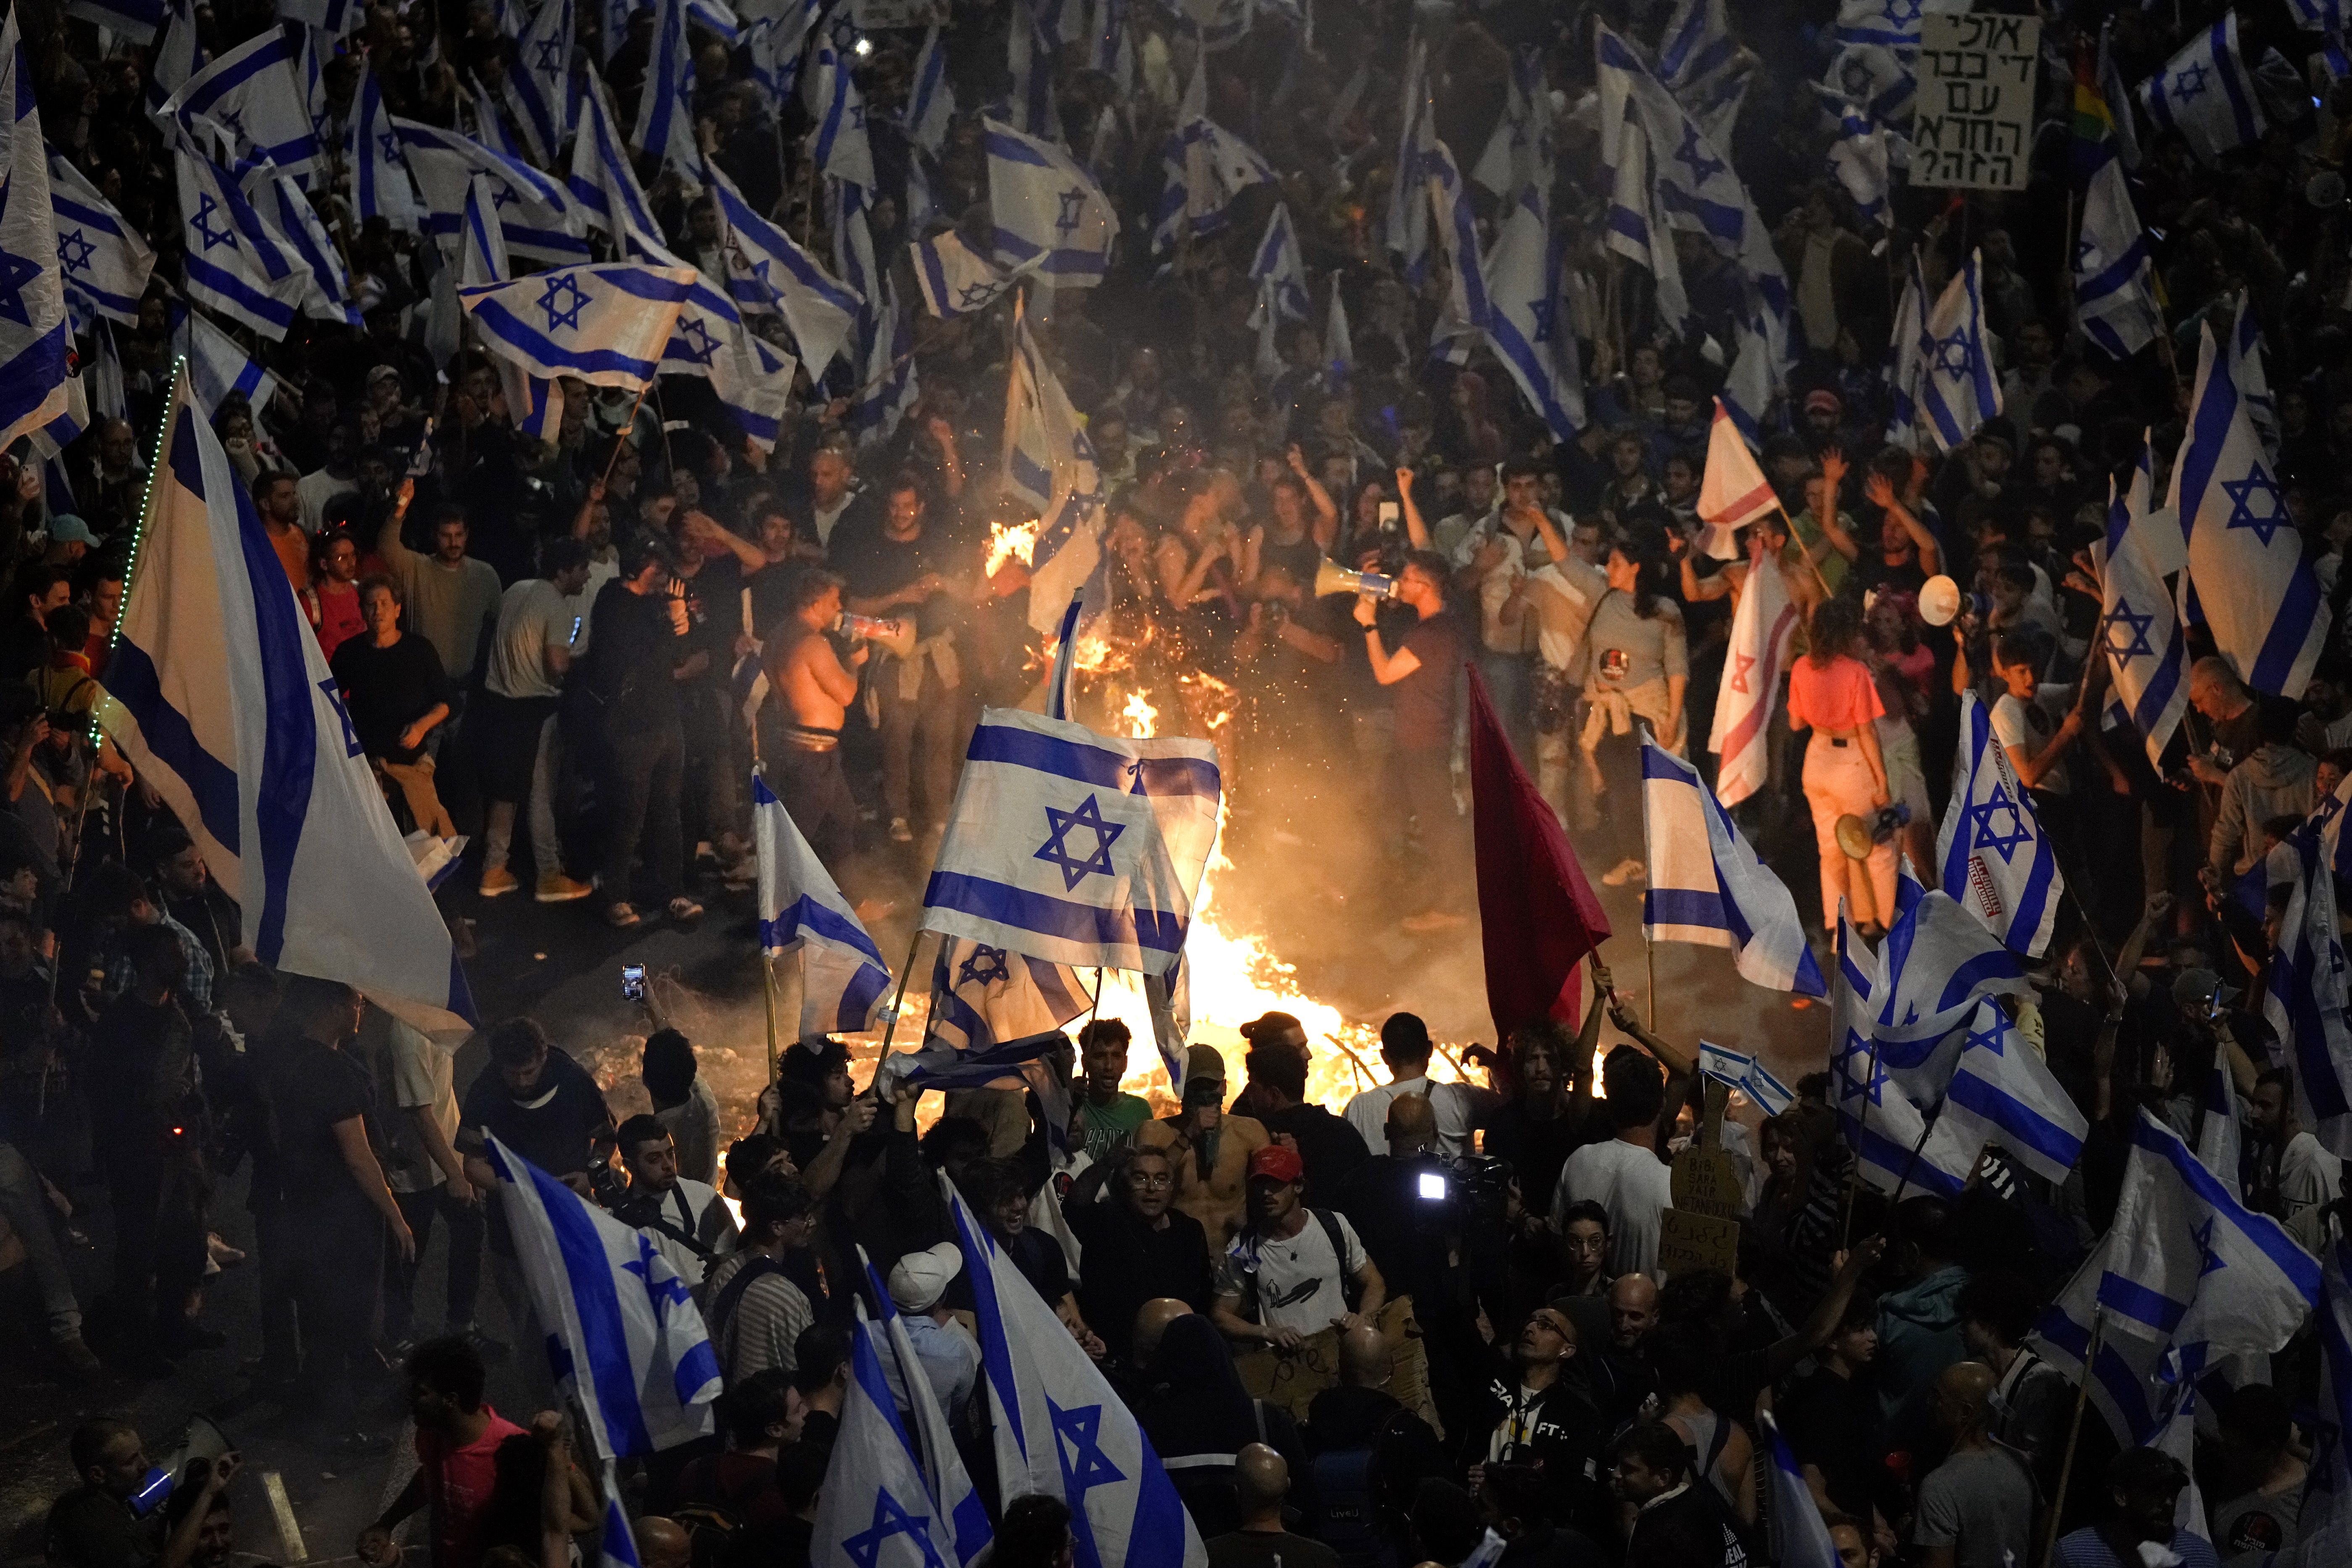 Israelis, die gegen den Justizreformplan von Premierminister Benjamin Netanjahu waren, legten während einer Protestaktion Lagerfeuer an und blockierten eine Autobahn